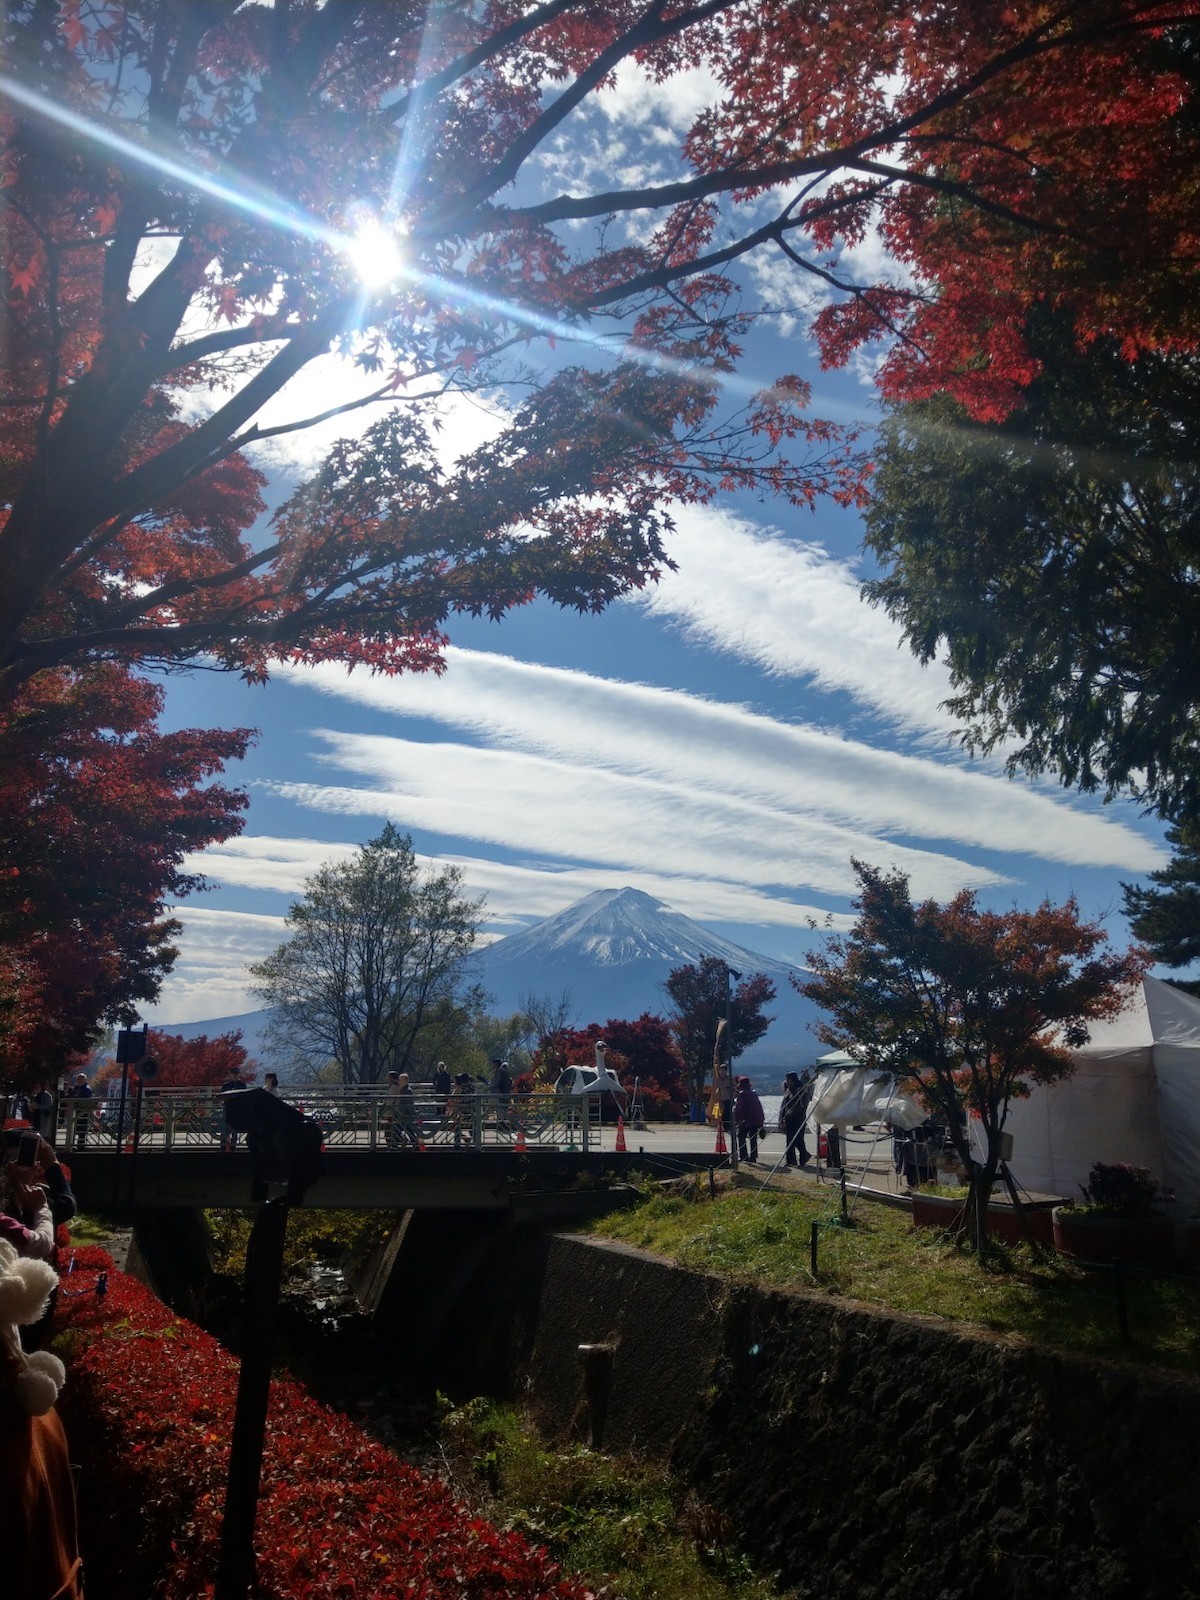 Mt Fuji Day Tour with Kawaguchiko Lake